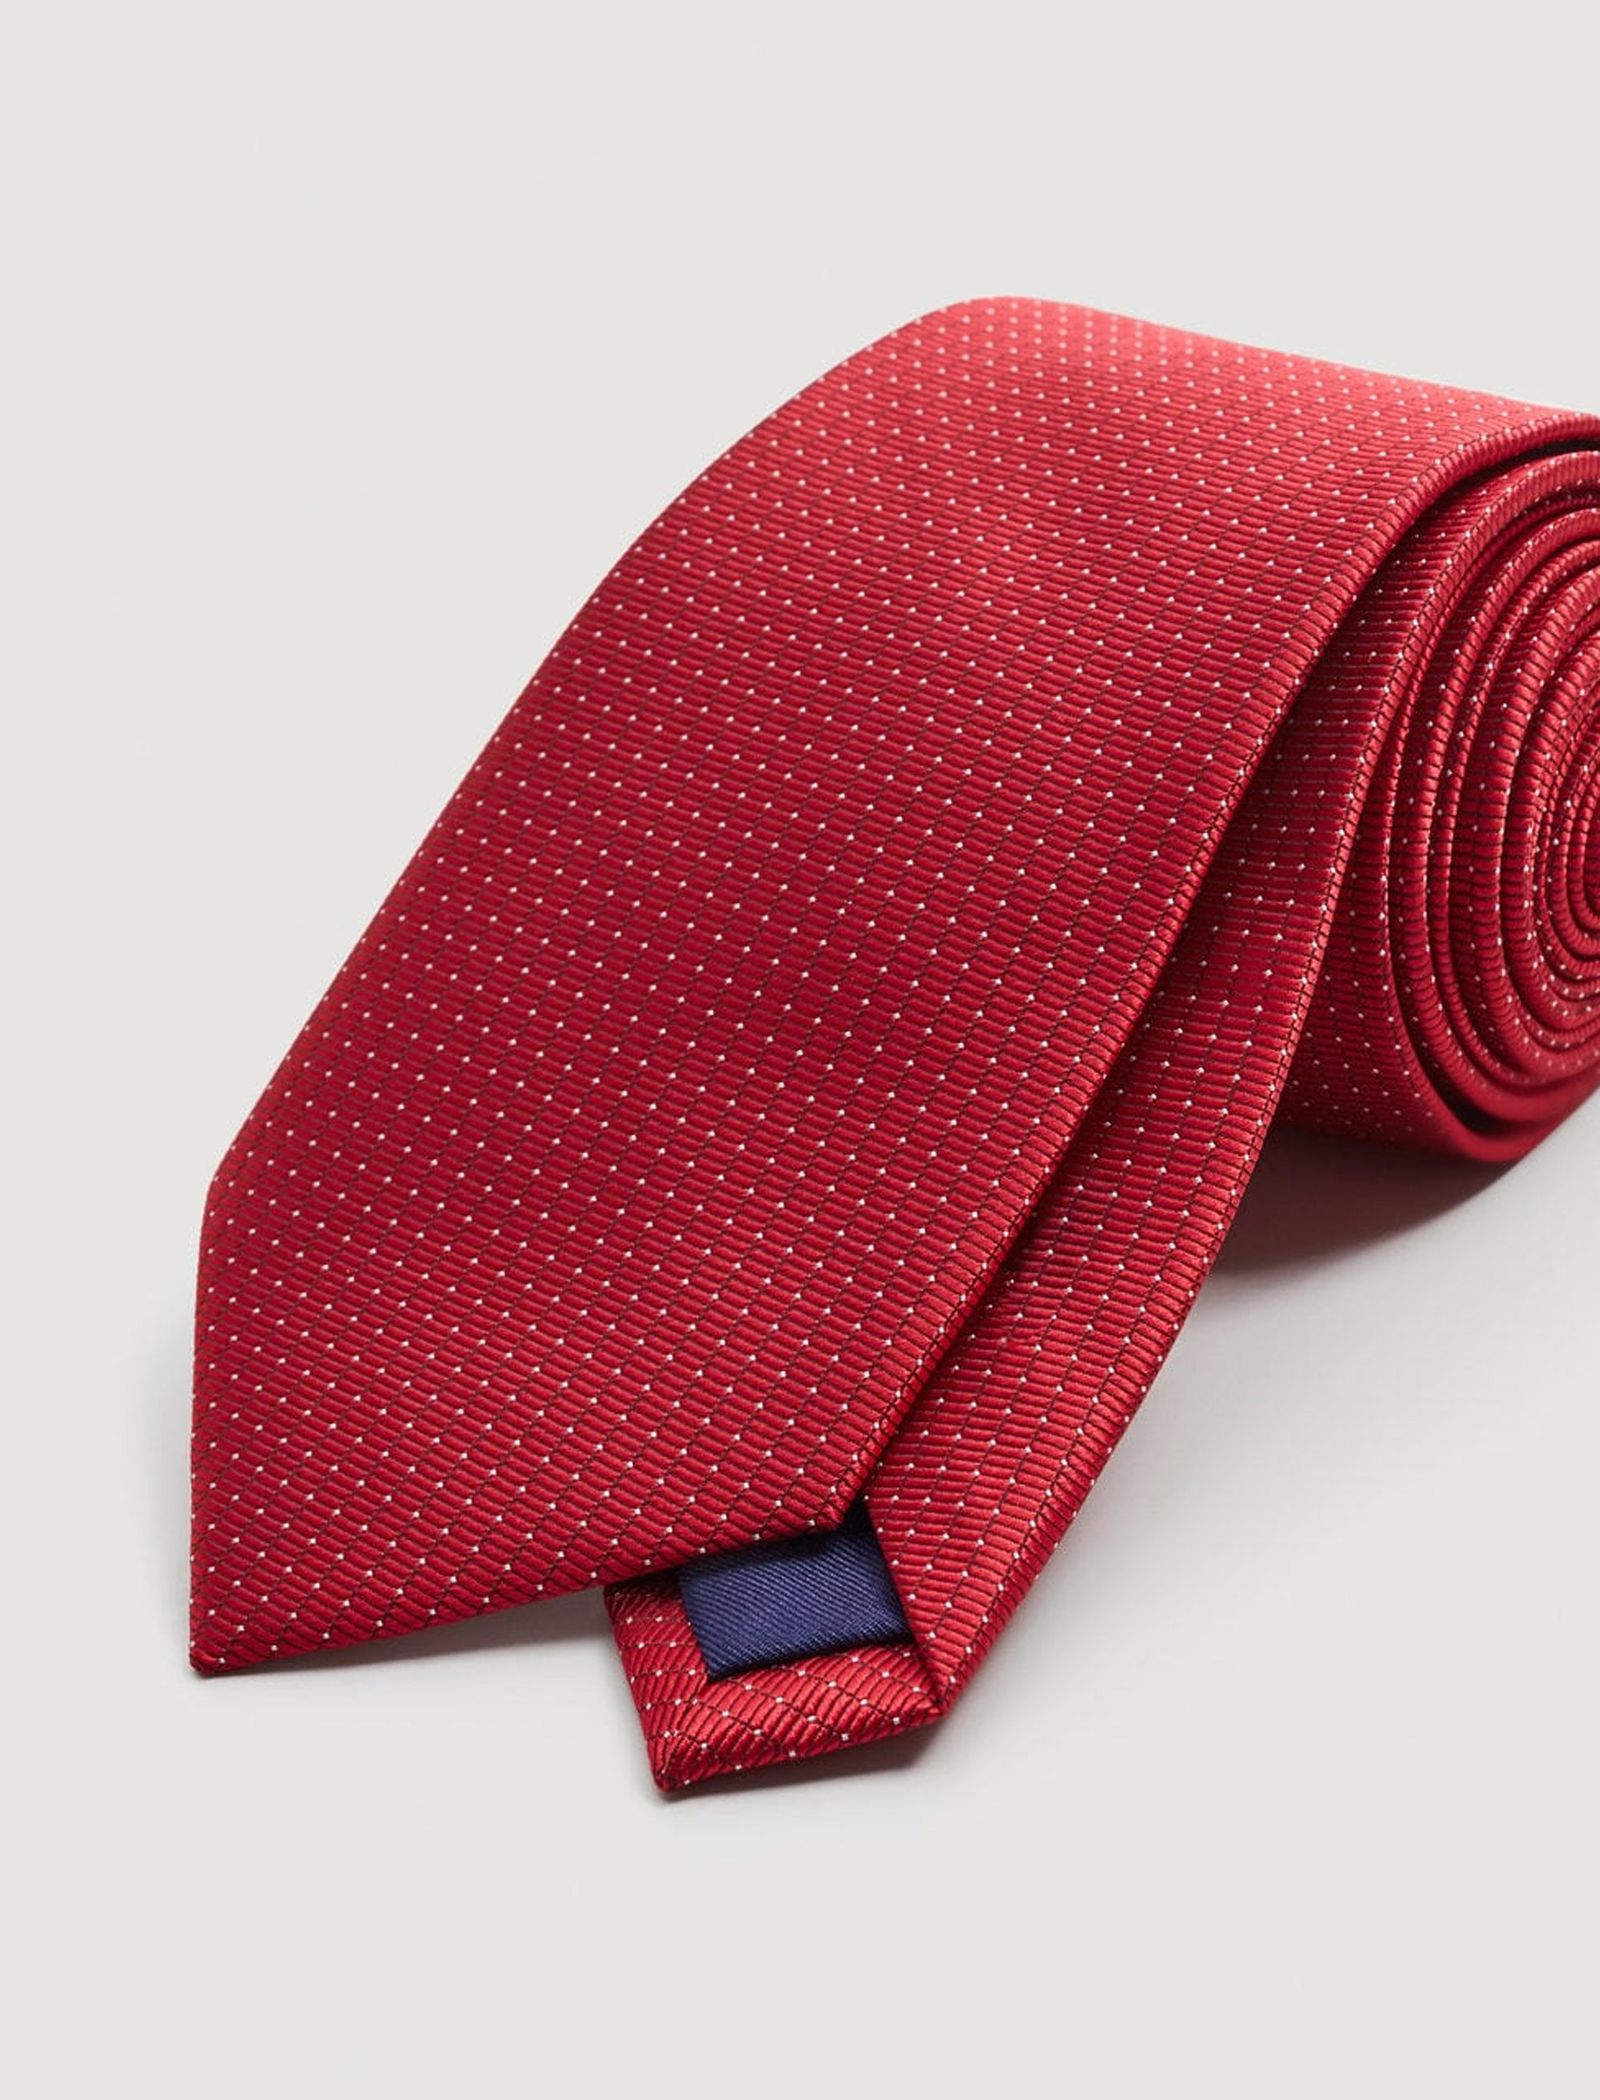 کراوات مانگو مدل 23033635 تک سایز - قرمز - 5